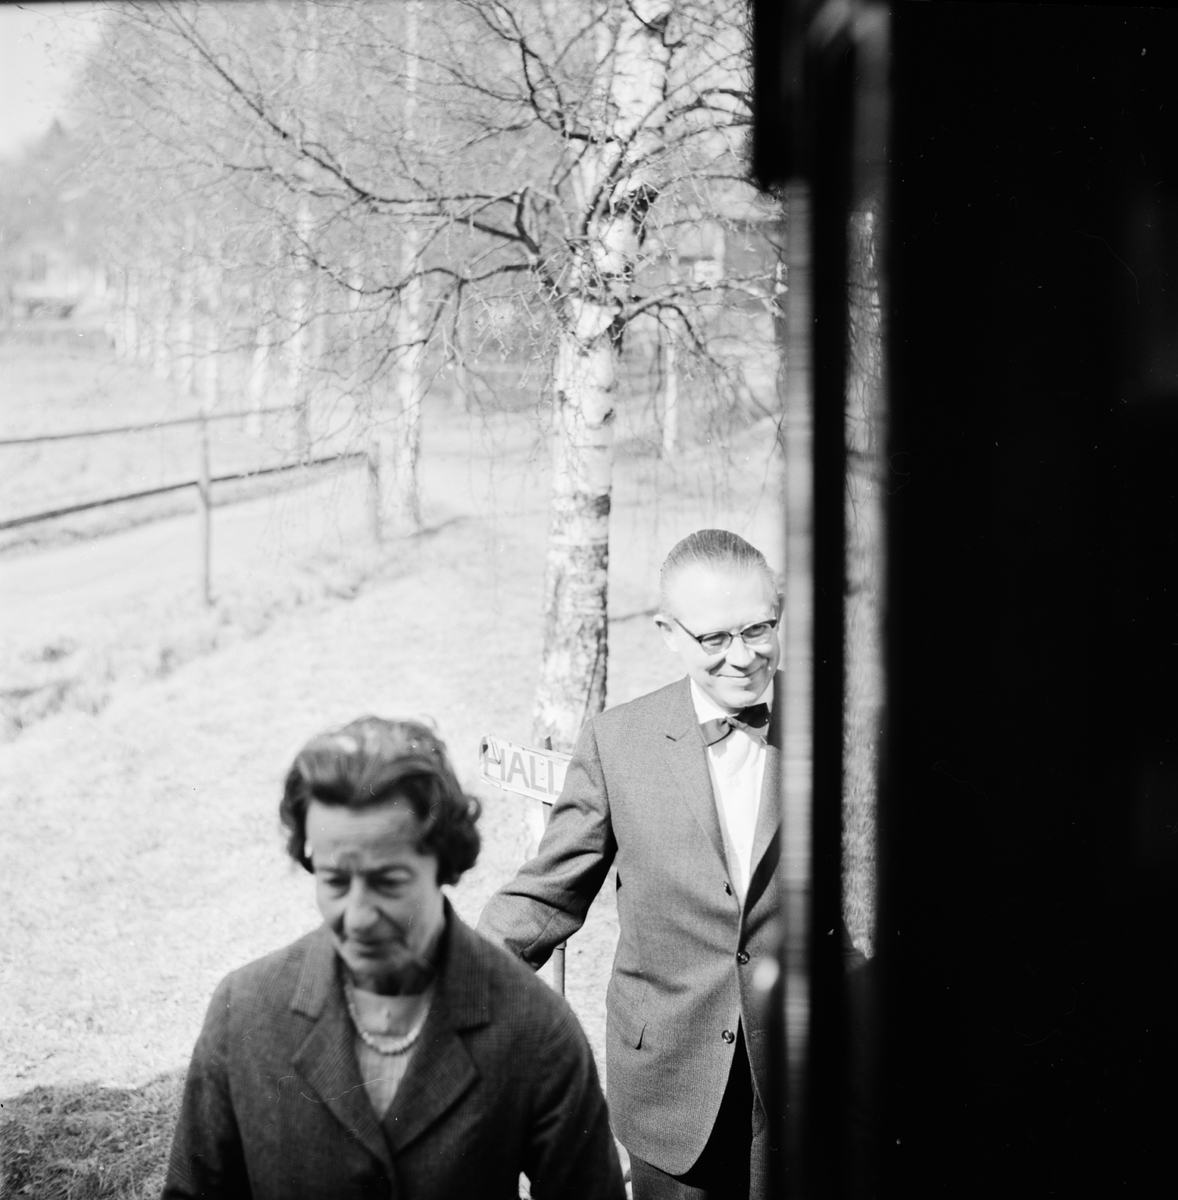 Landstinget - bussrundtur runt Uppsala, april 1964